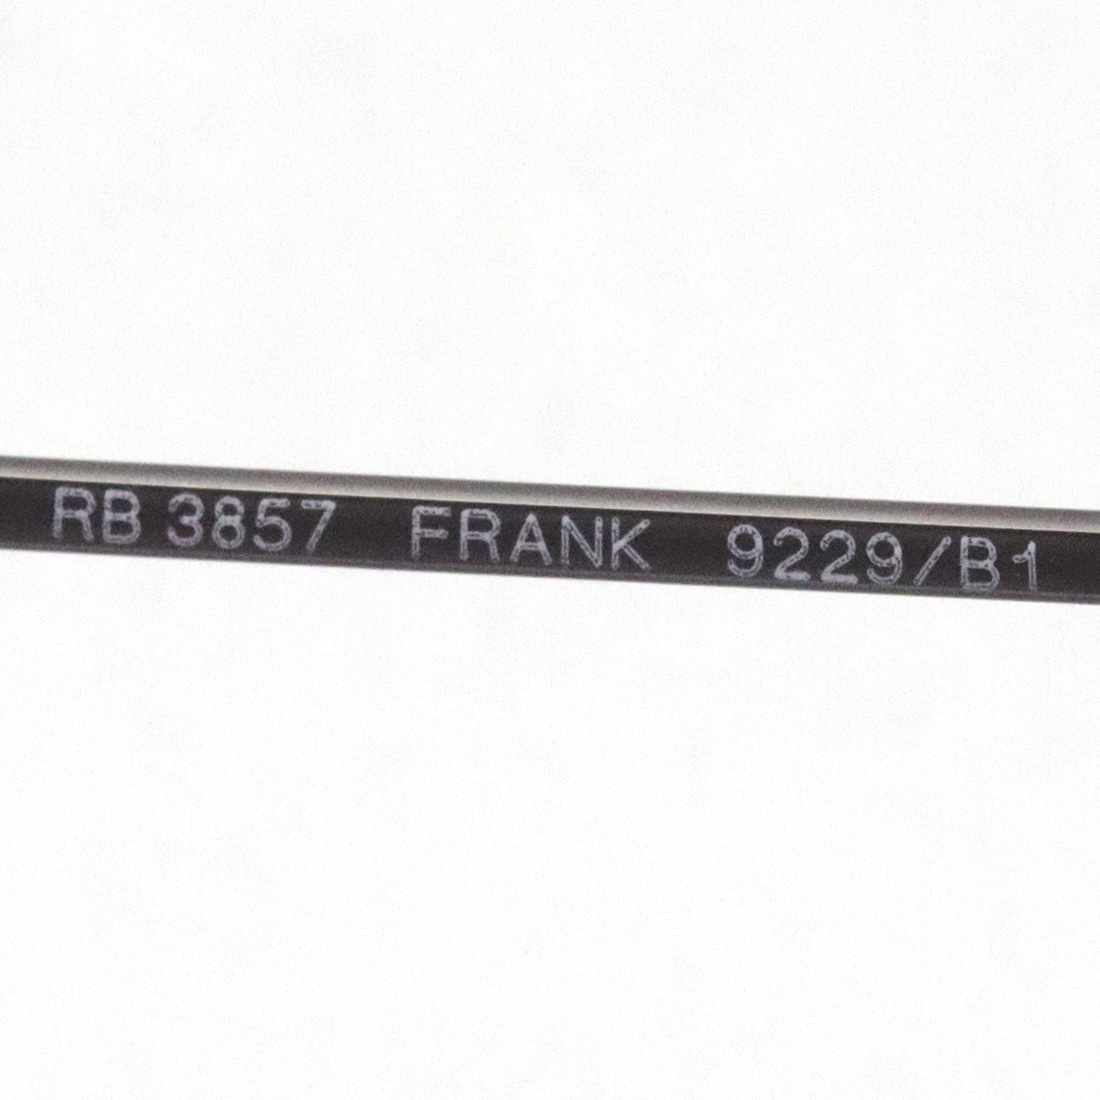 レイバン サングラス フランク Ray-Ban RB3857 9229B1(48mm ガンメタル